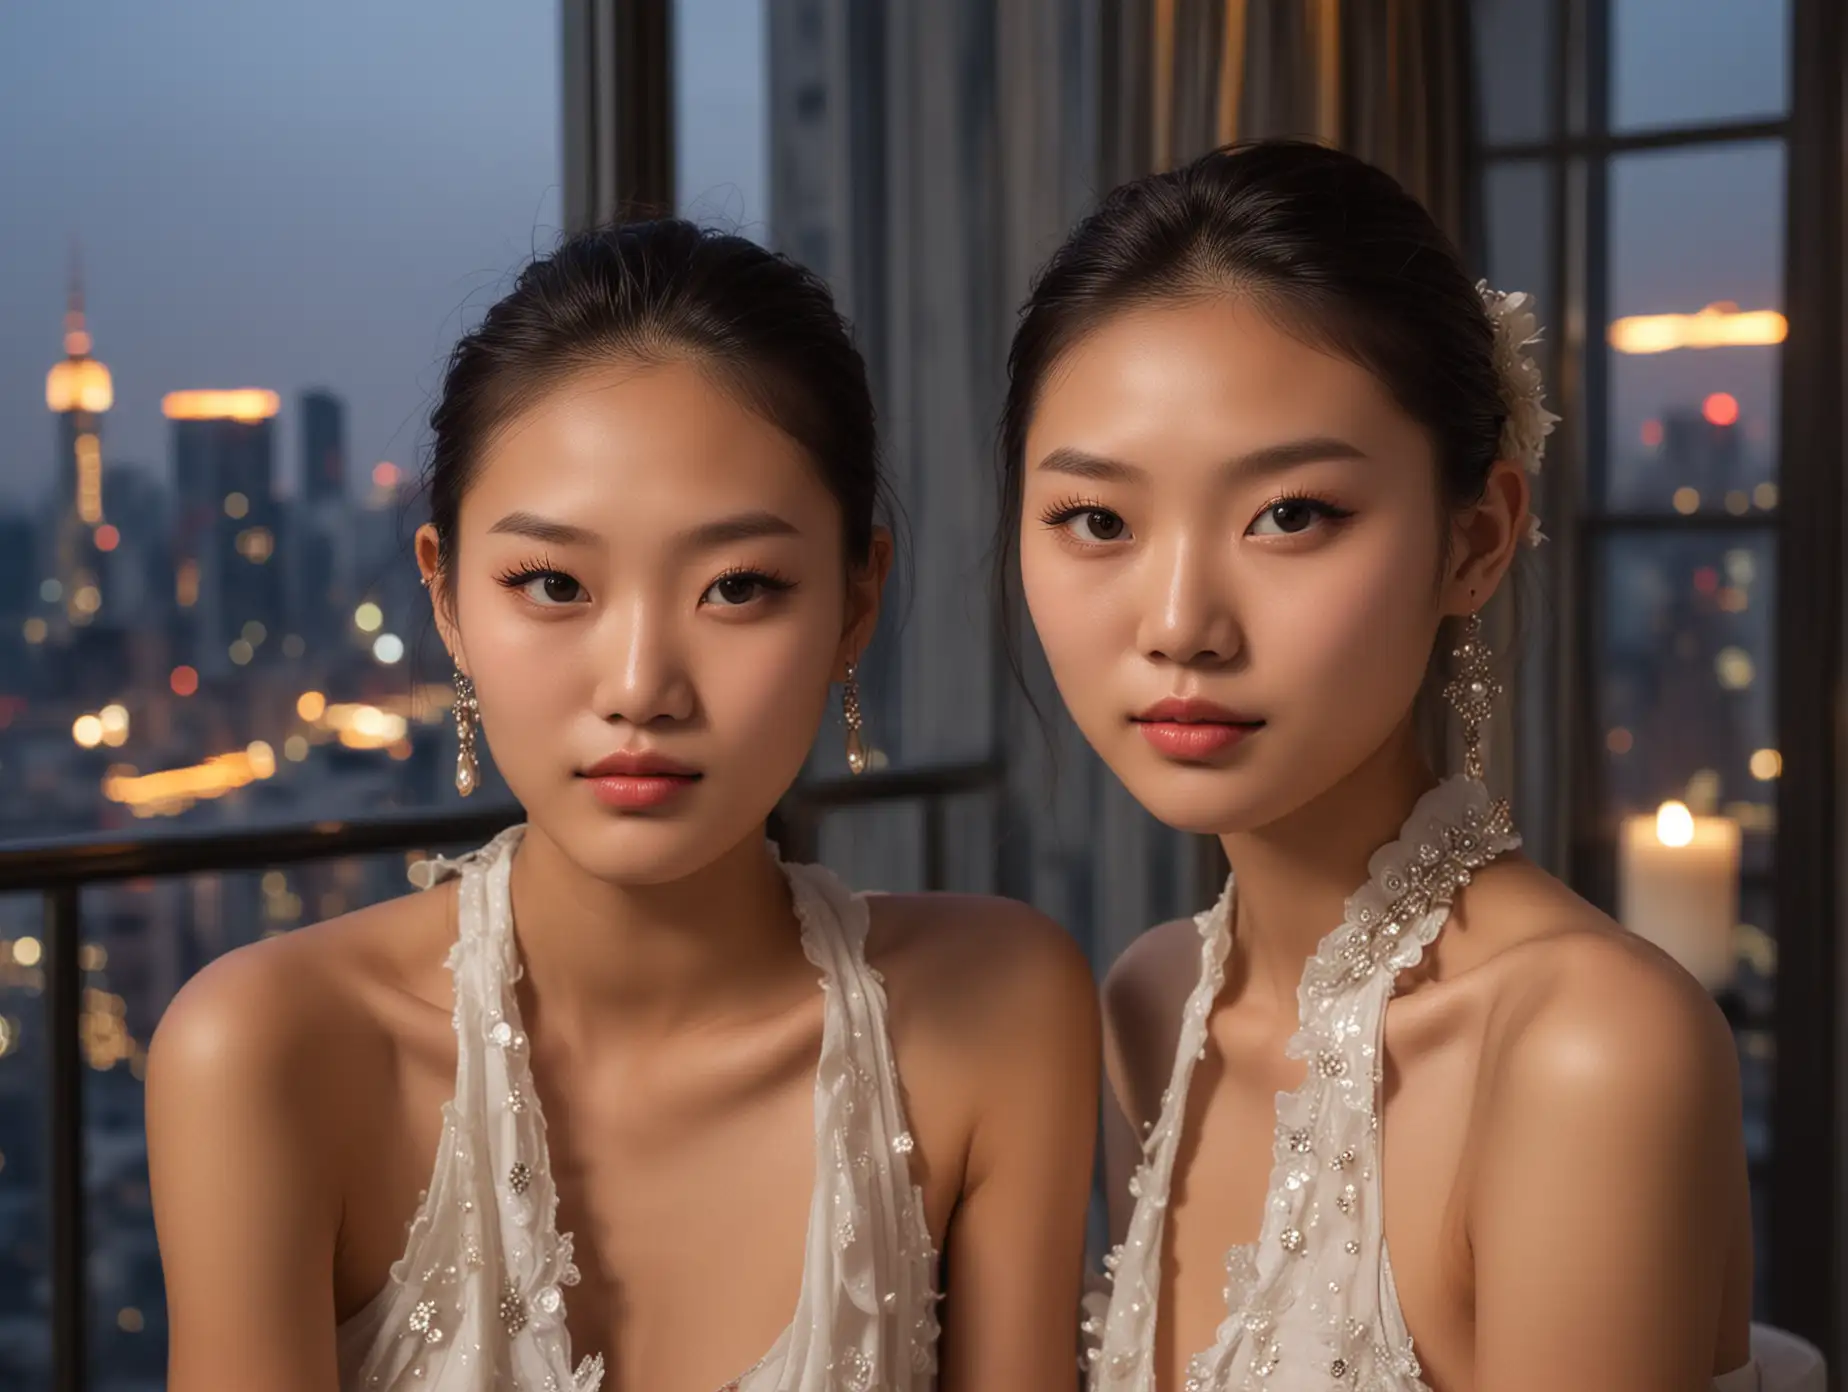 Elegant-Chinese-Fashion-Models-at-Dusk-Highrise-Penthouse-Party